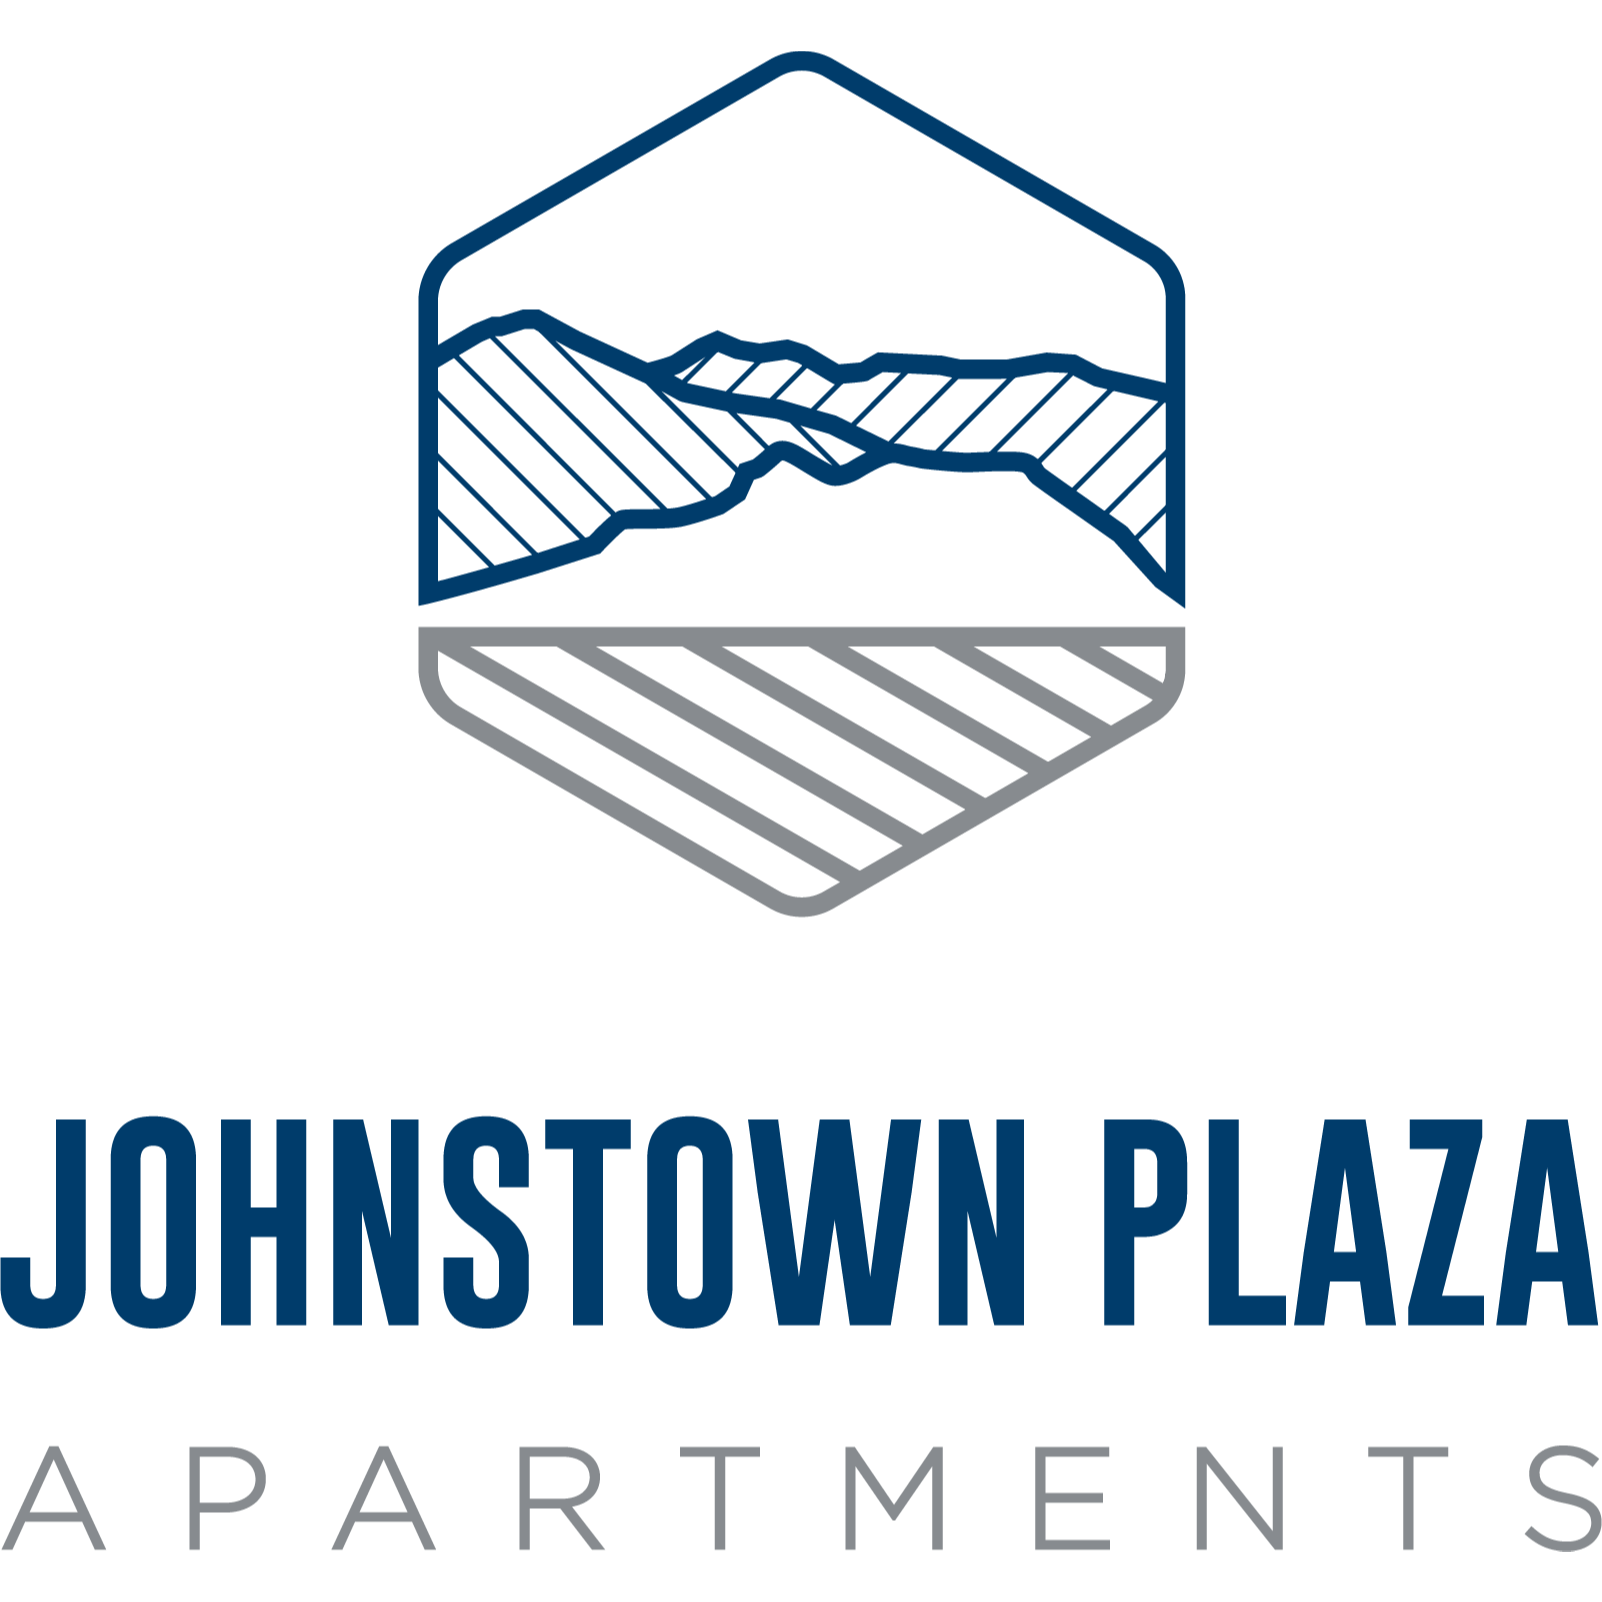 Johnstown Plaza